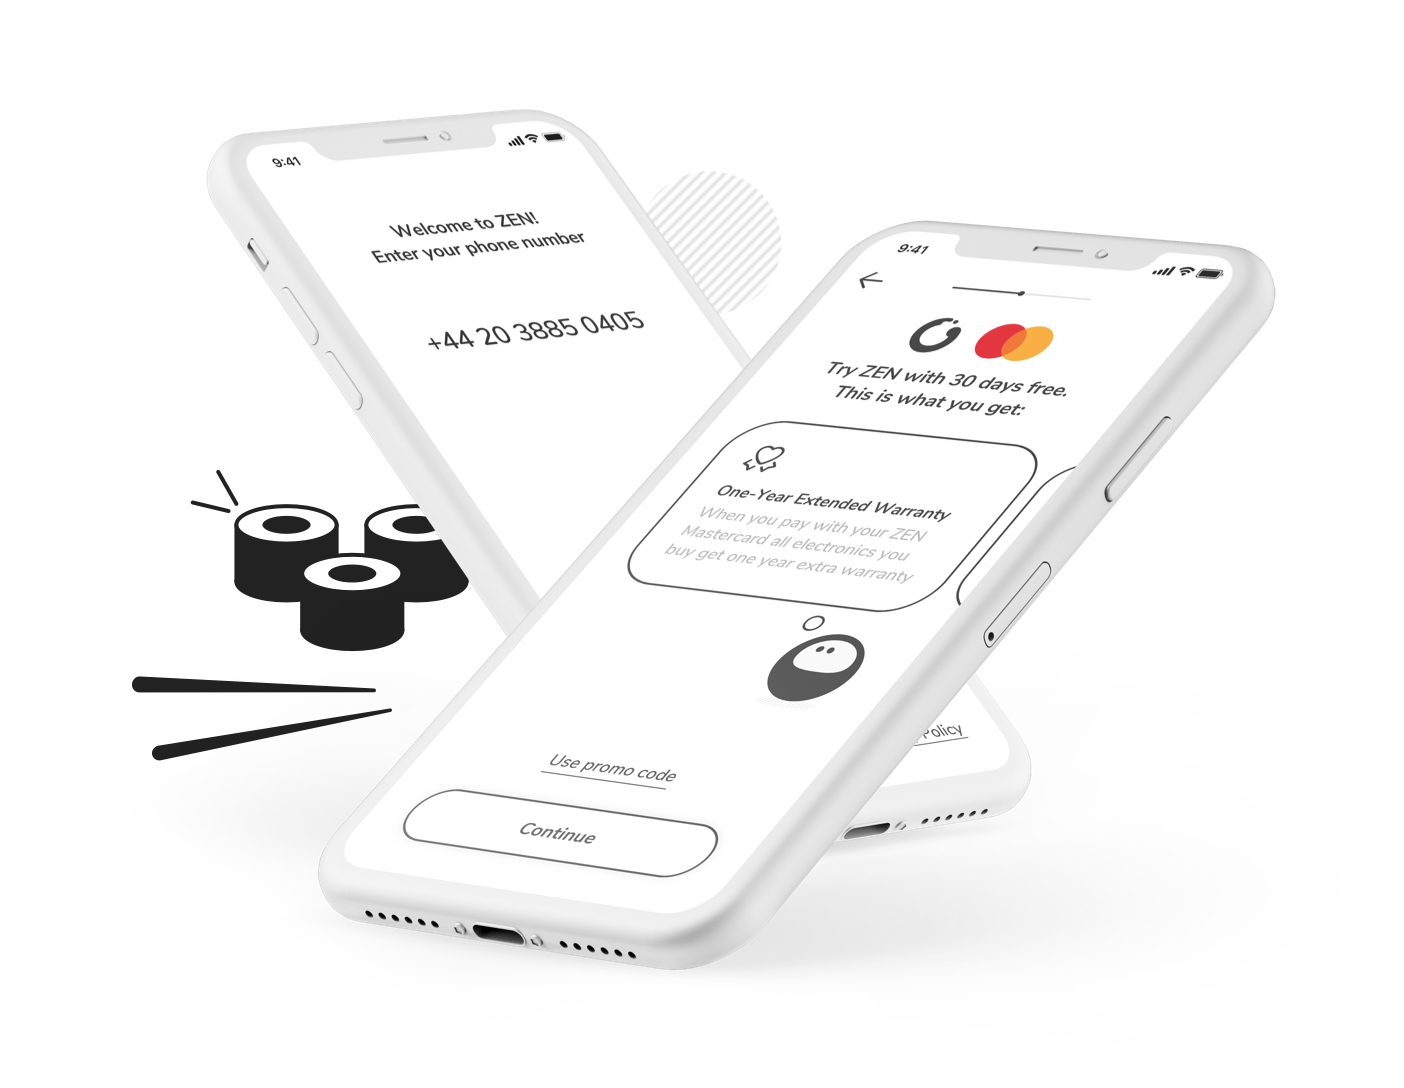 Nowa usługa płatnicza Zen - pieniądze na dowolną kartę Mastercard na świecie